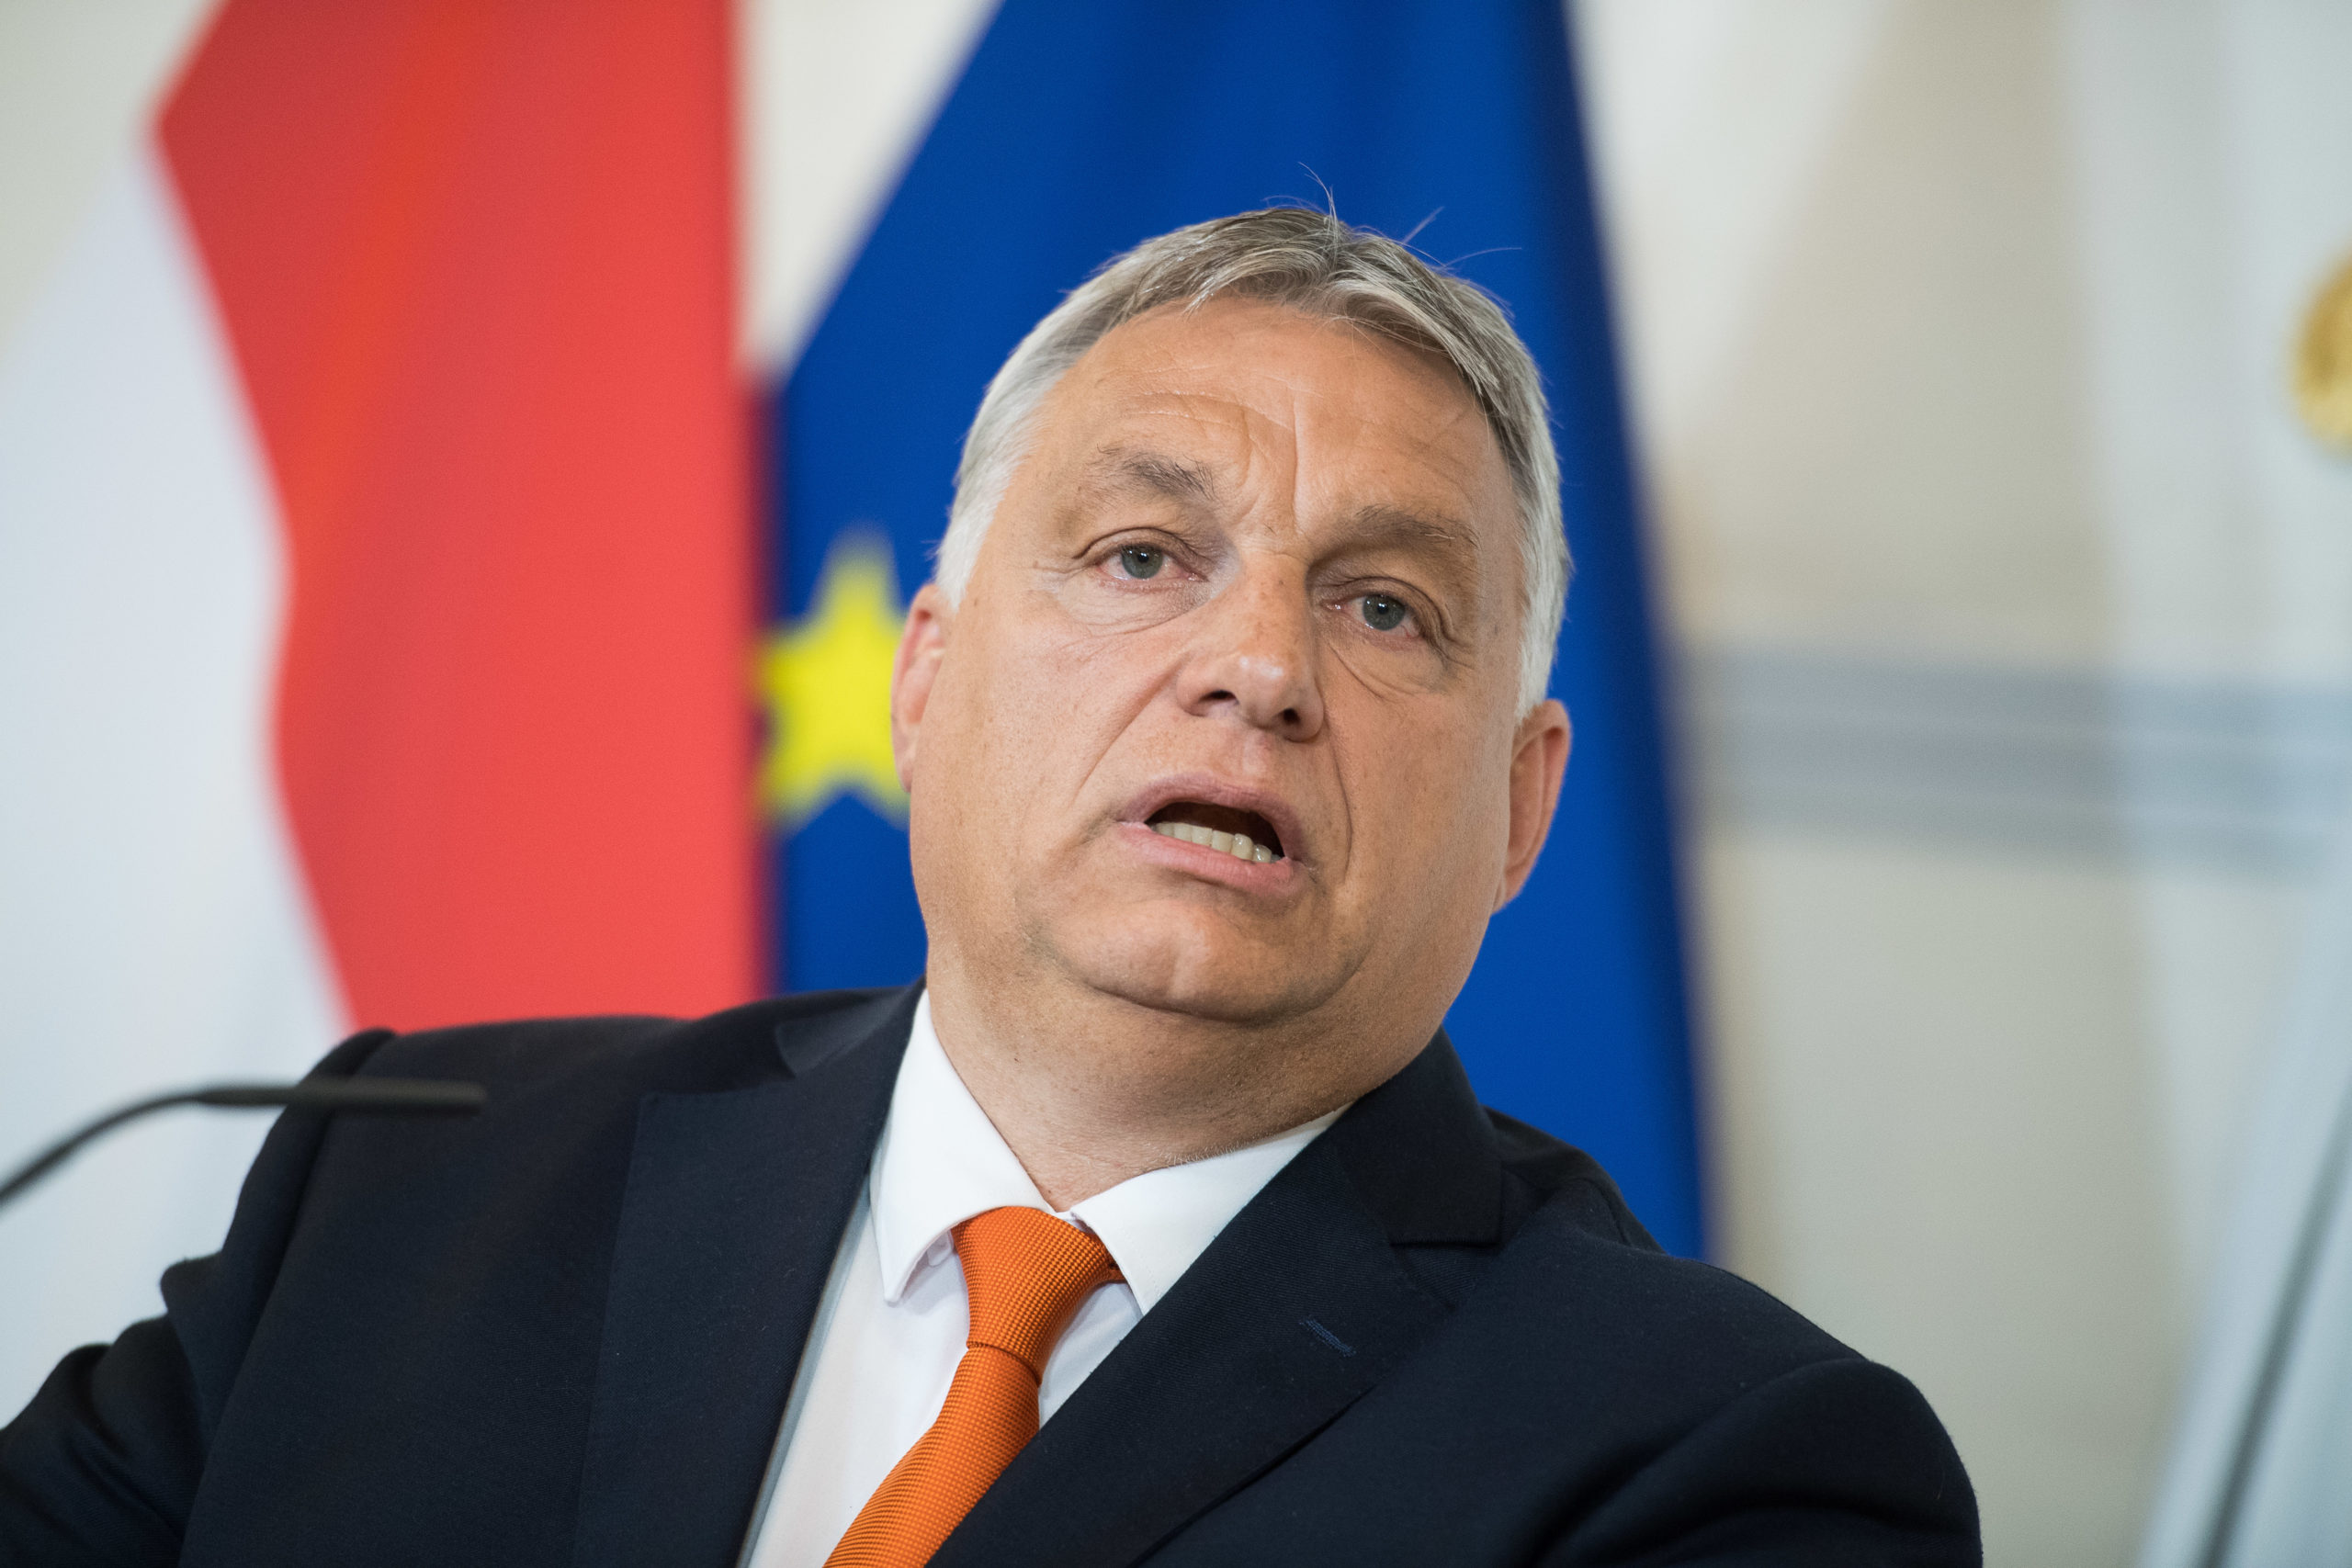 As Europe Shivers, Hungary Has Heat